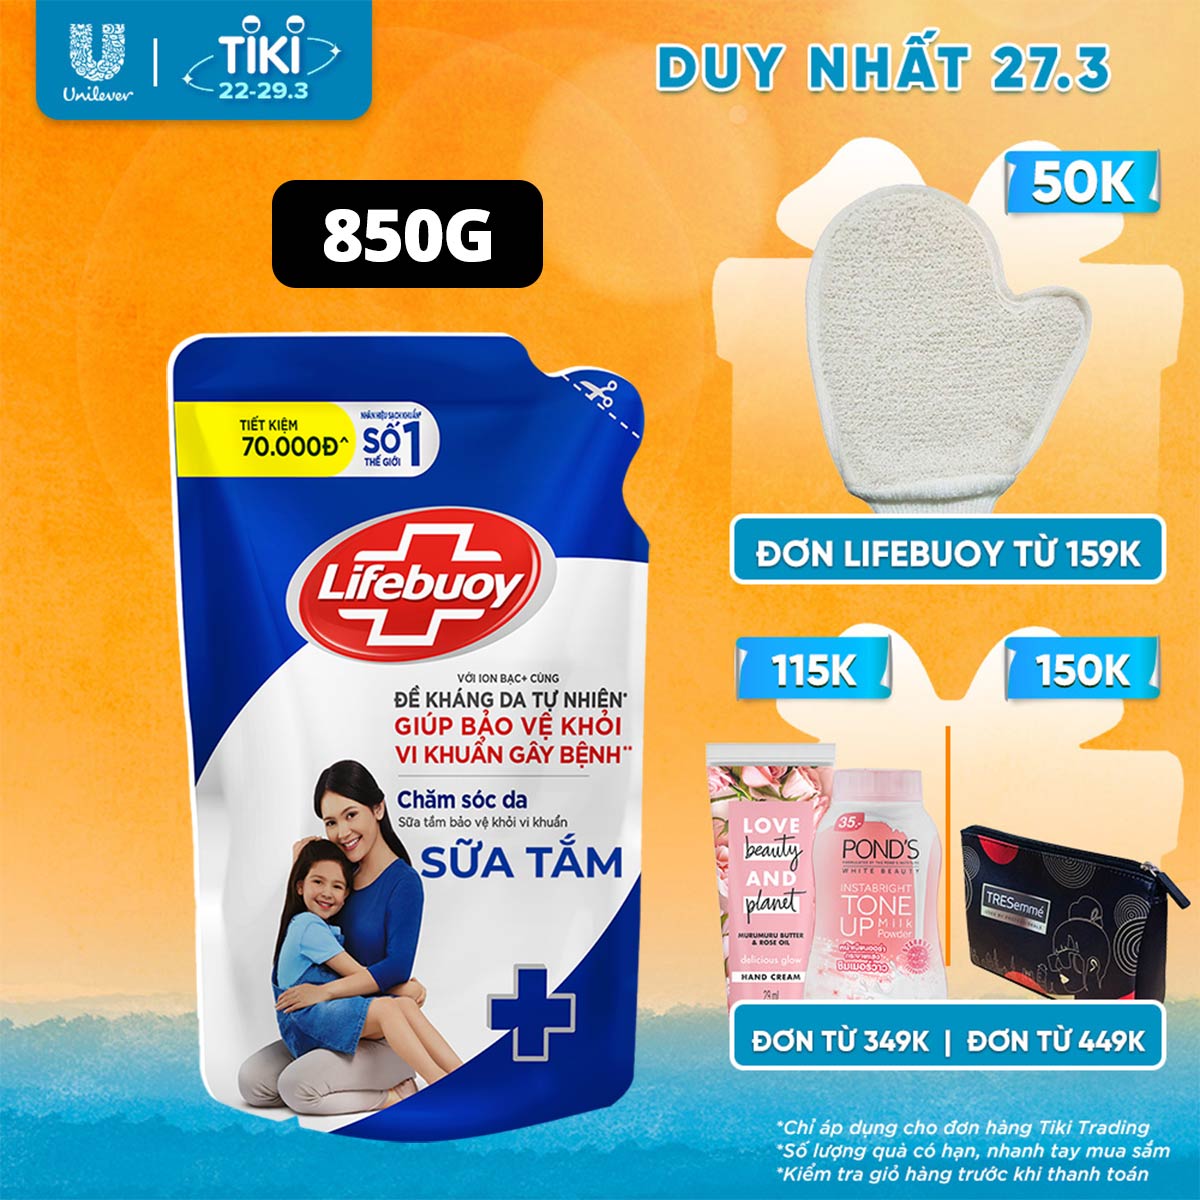 Sữa Tắm Lifebuoy Sạch Khuẩn Chăm Sóc Da Ngăn Ngừa Vi Khuẩn Lây Lan Với Ion Bạc+ Hỗ Trợ Cùng Đề Kháng Da Tự Nhiên Túi 800G